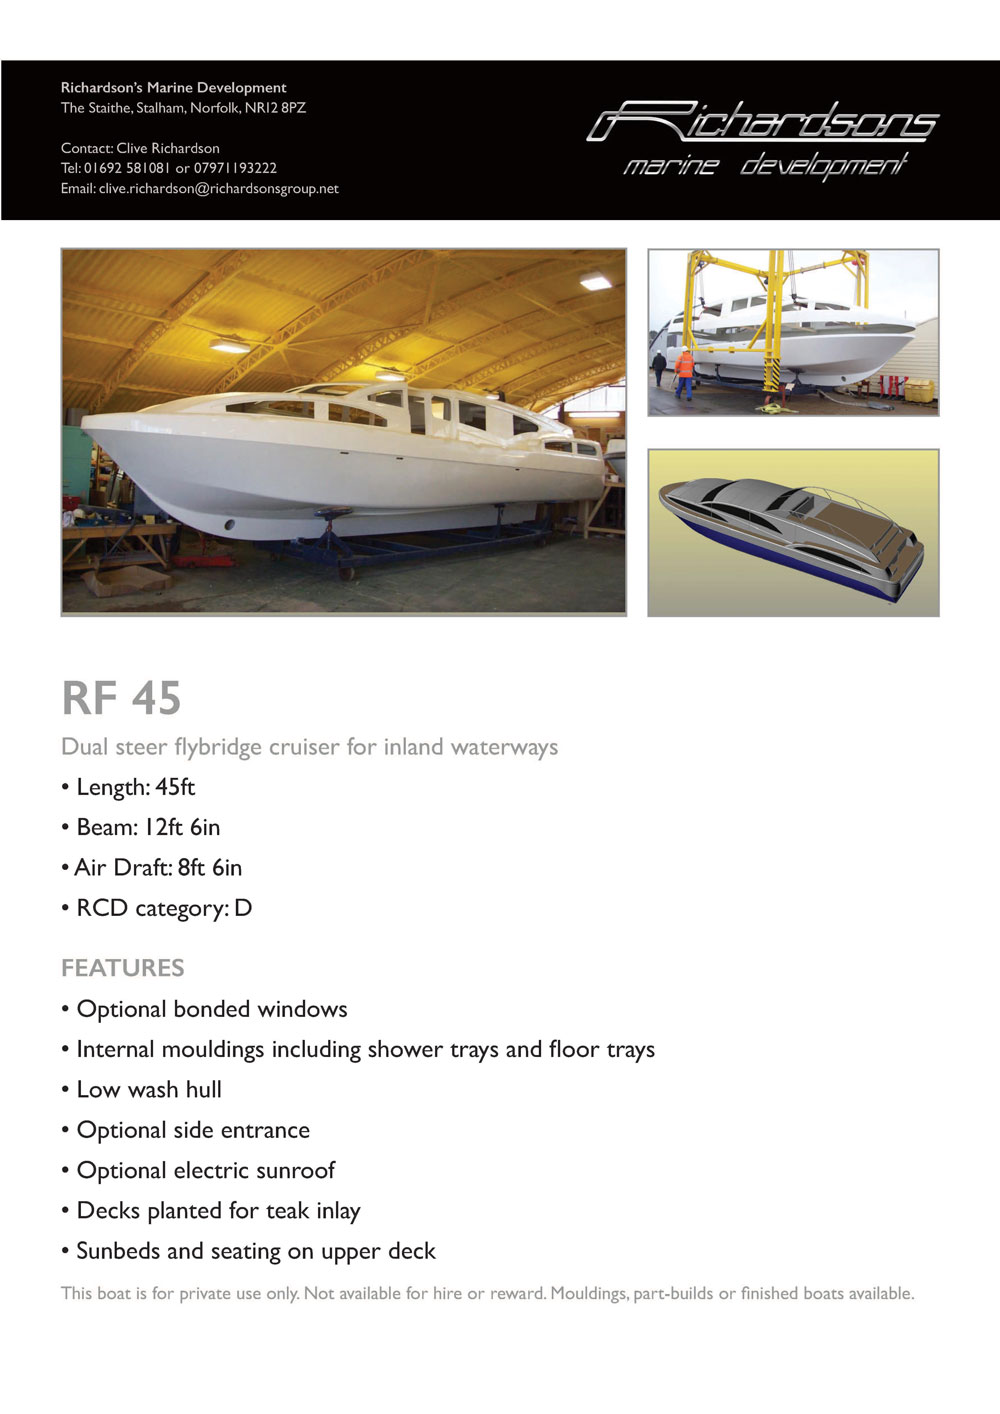 RF 45 Dual Steer Flybridge cusier for inland waterways